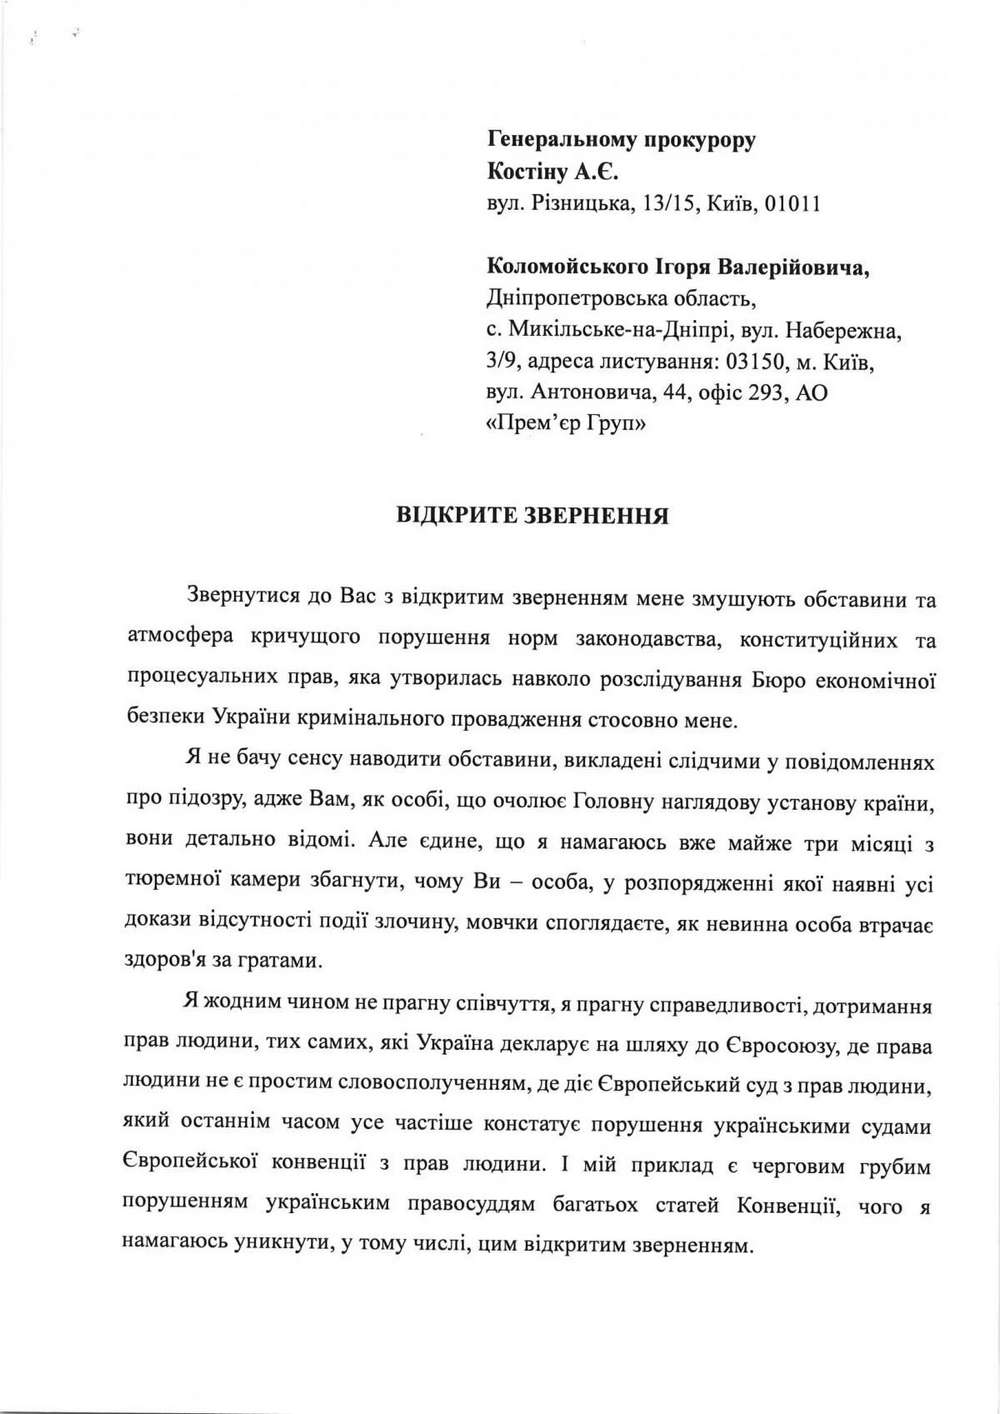 «Невинна особа втрачає здоров’я за ґратами» - Коломойський написав листа генпрокурору